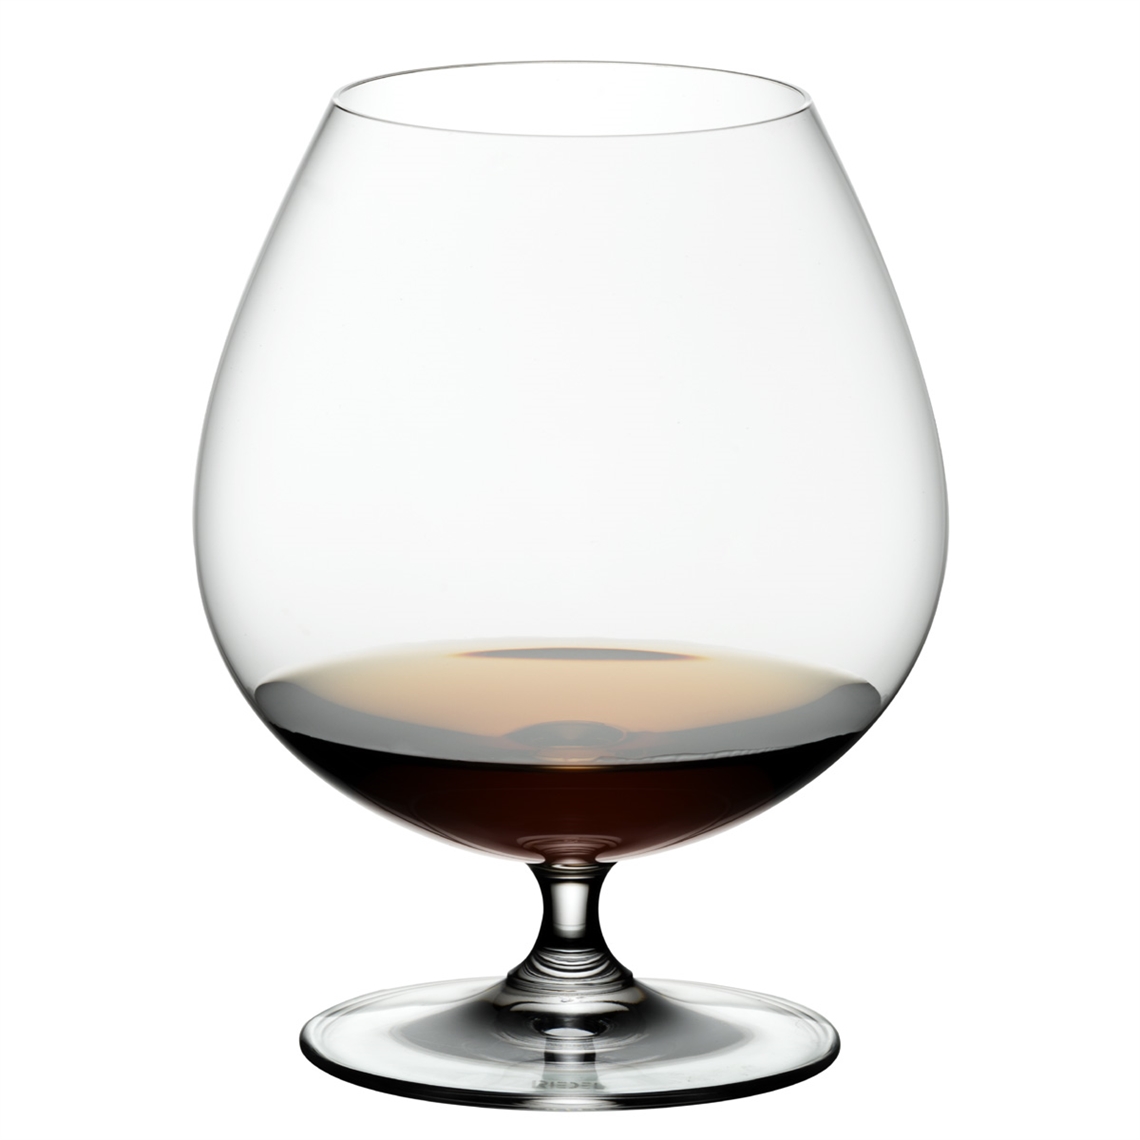 View more wine tasting glasses from our Spirit Glasses range